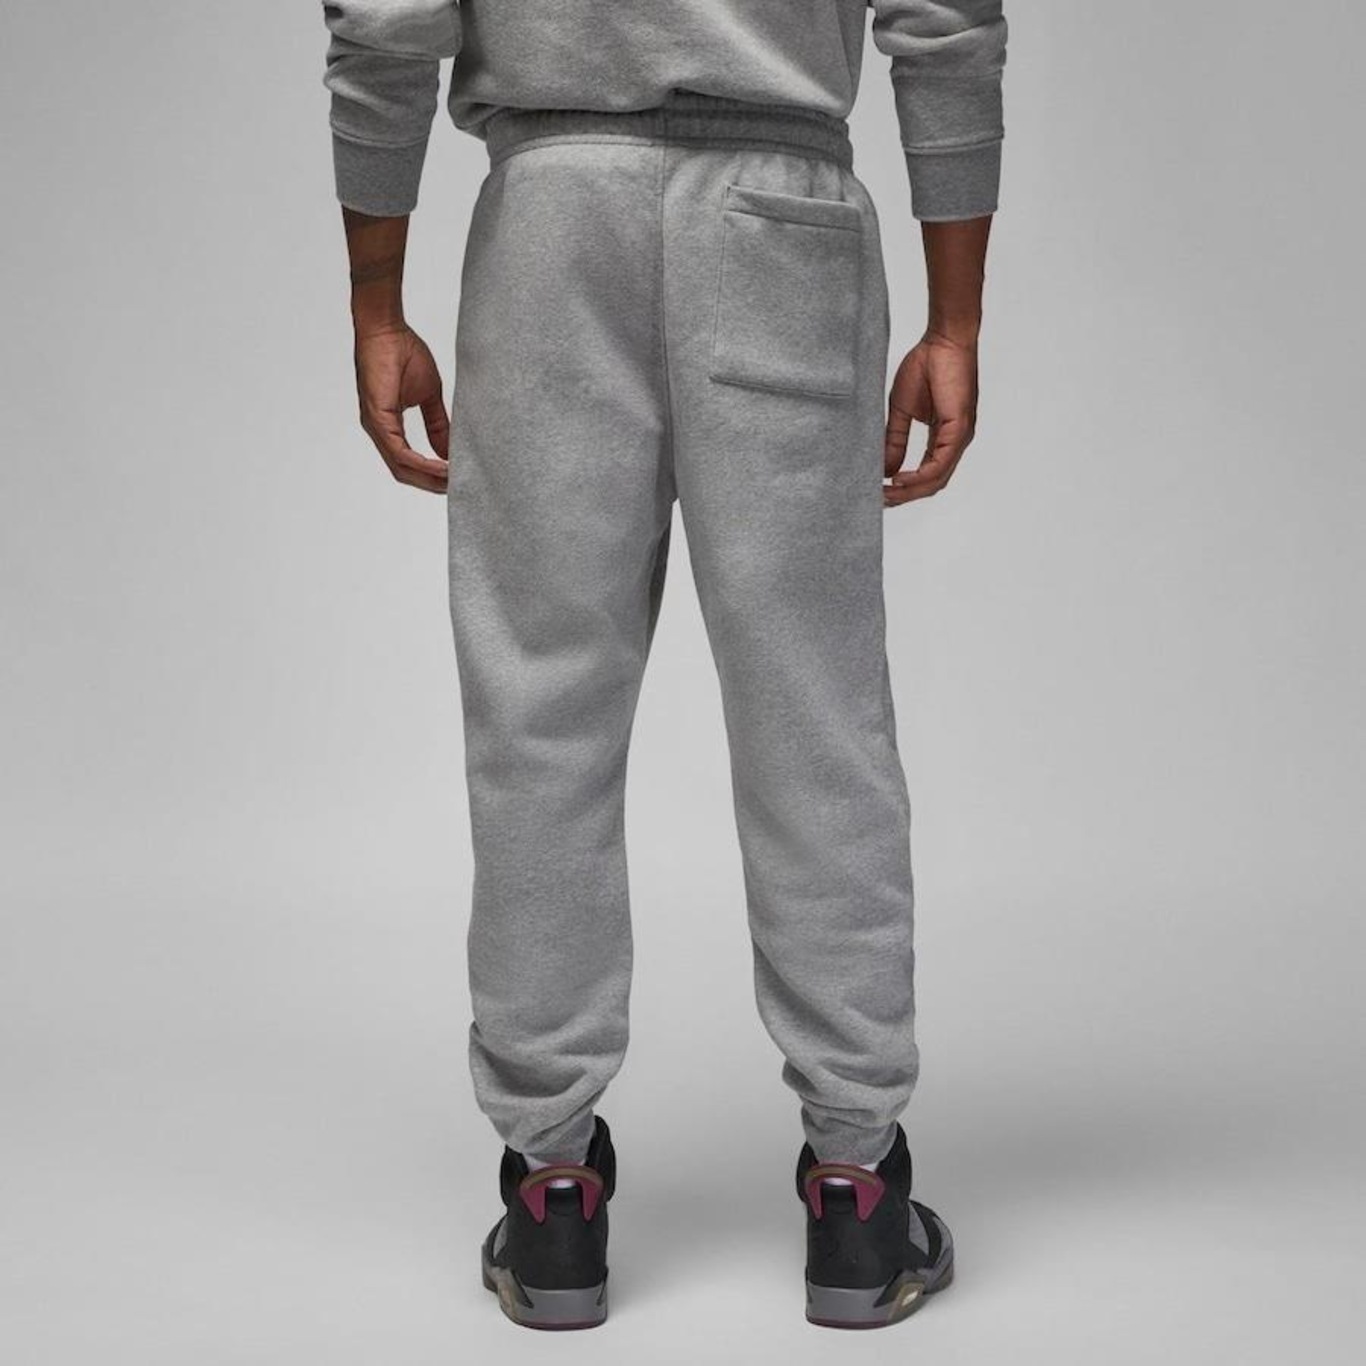 Calça Nike Jordan Essential Fleece - Masculina em Promoção